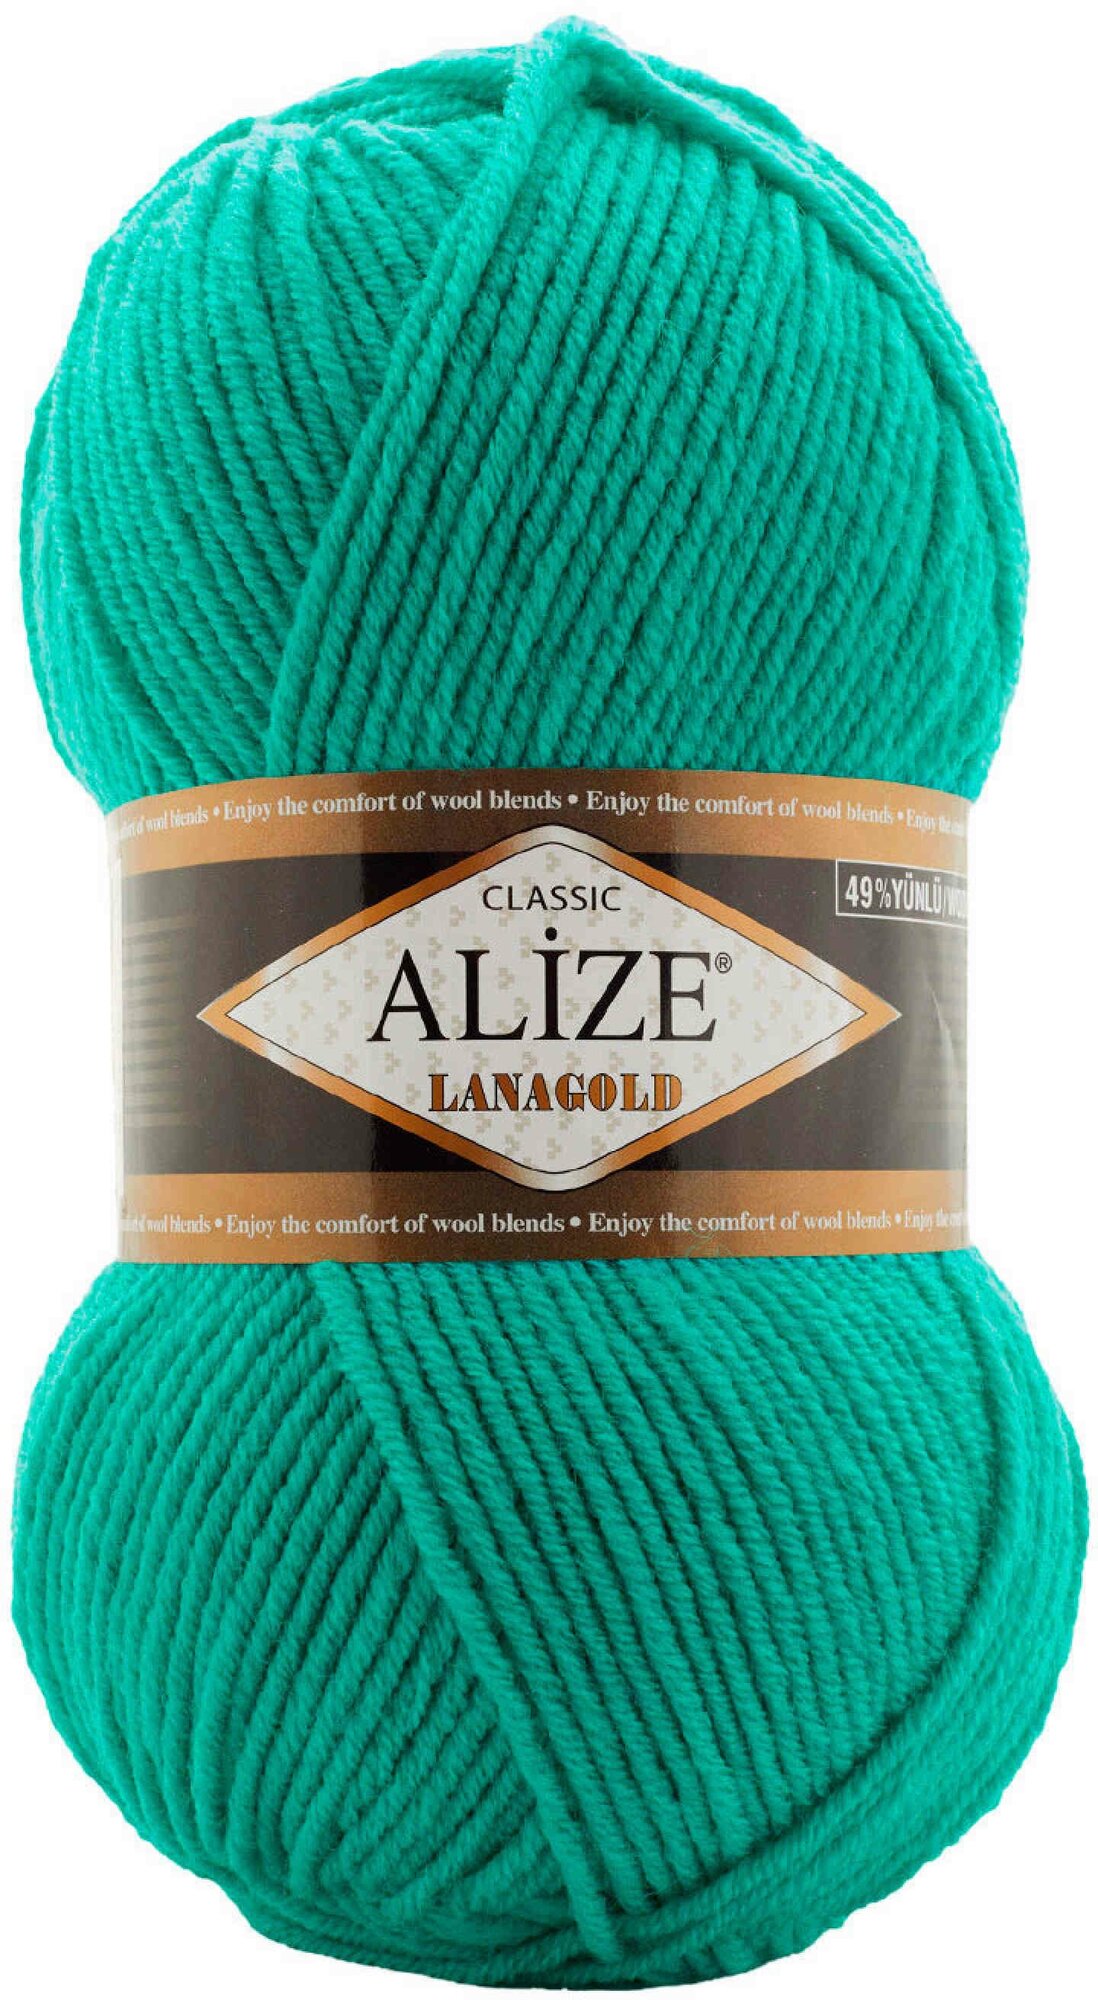 Пряжа Alize Lanagold бирюзово-зеленый (477), 51%акрил/49%шерсть, 240м, 100г, 1шт